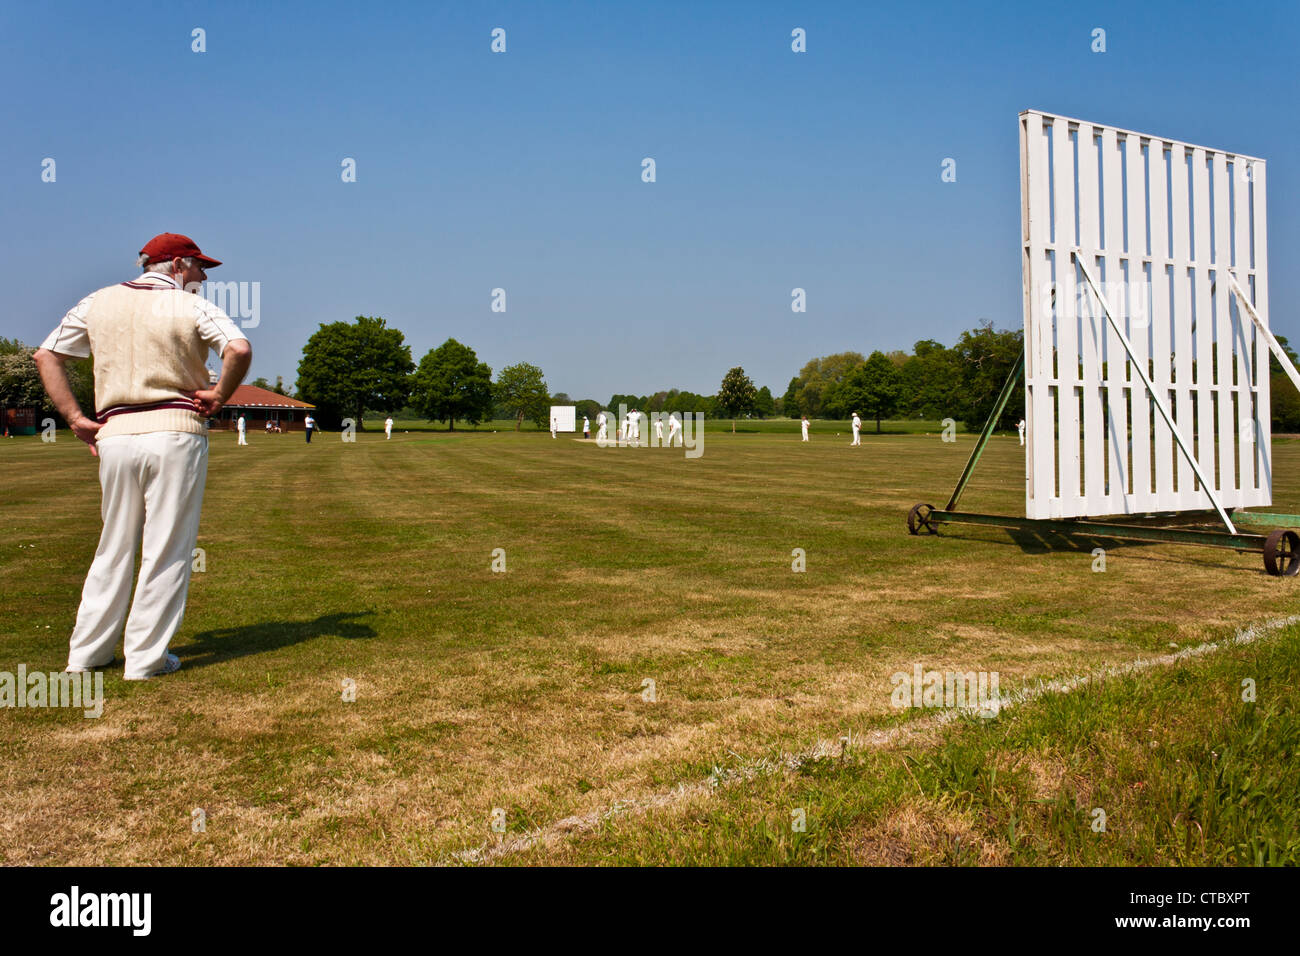 Un jeu traditionnel de cricket sur un village anglais vert. Maidenhead Berkshire, England, GB, au Royaume-Uni. Banque D'Images